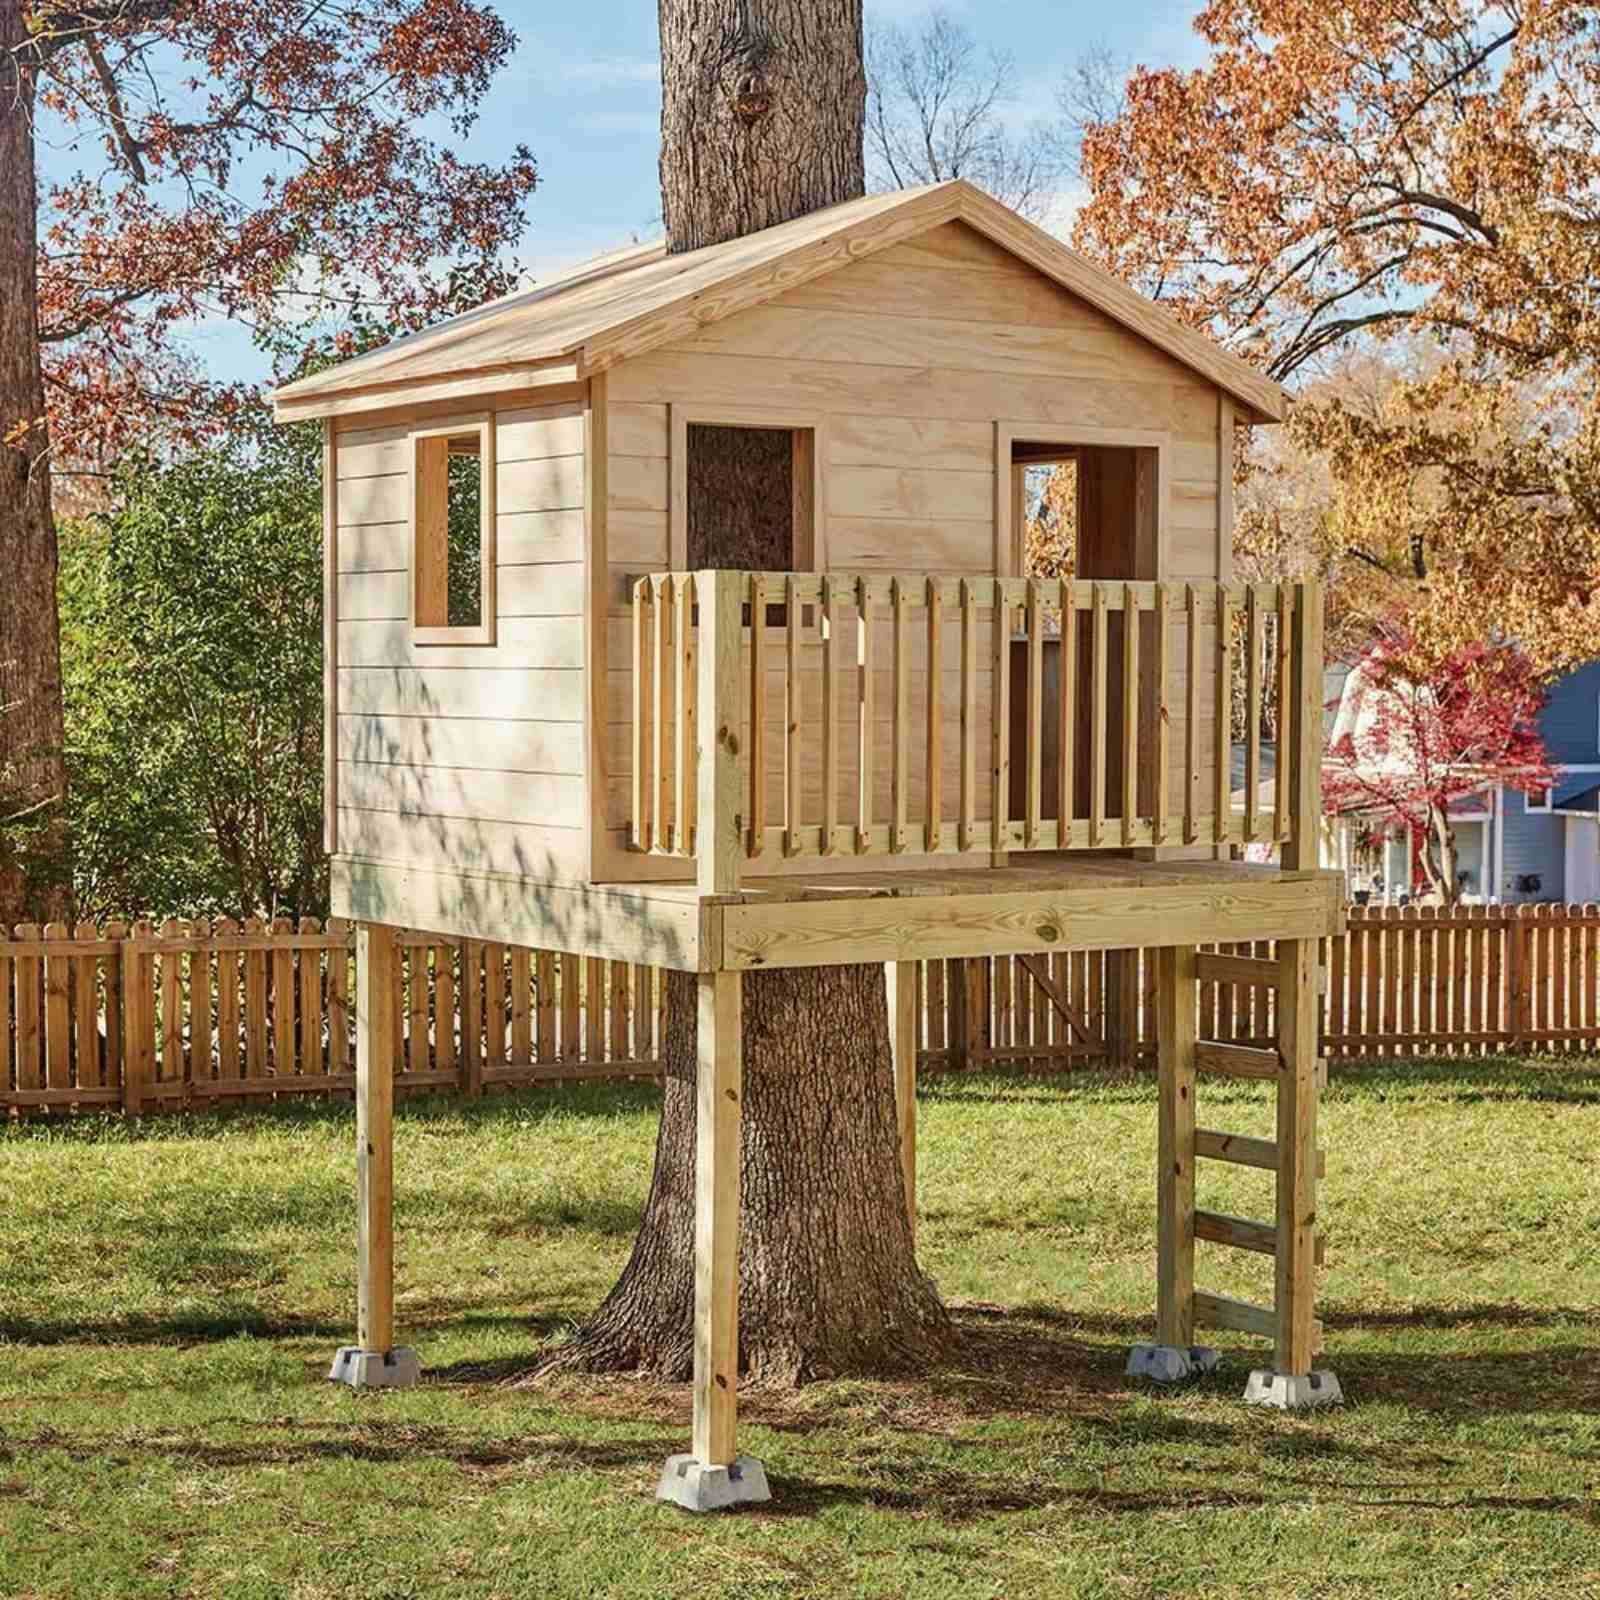 Domek na drzewie, domek dla dzieci, plac zabaw. Unikalny projekt